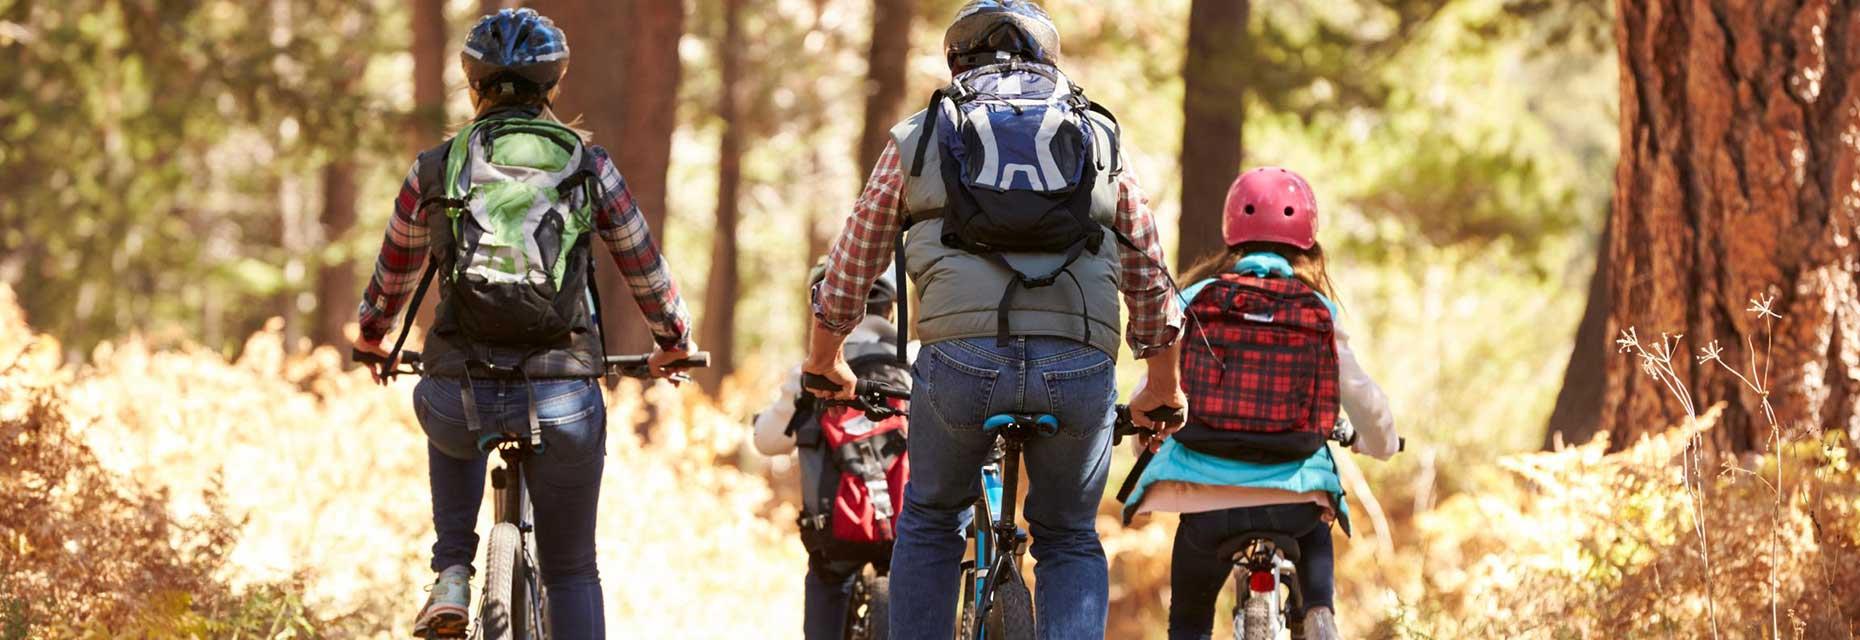 De camping Ballastières in de Zuidelijke Vogezen biedt informatie en kaarten met fietsroutes, zodat u mooie fietstochten met uw gezin kunt plannen